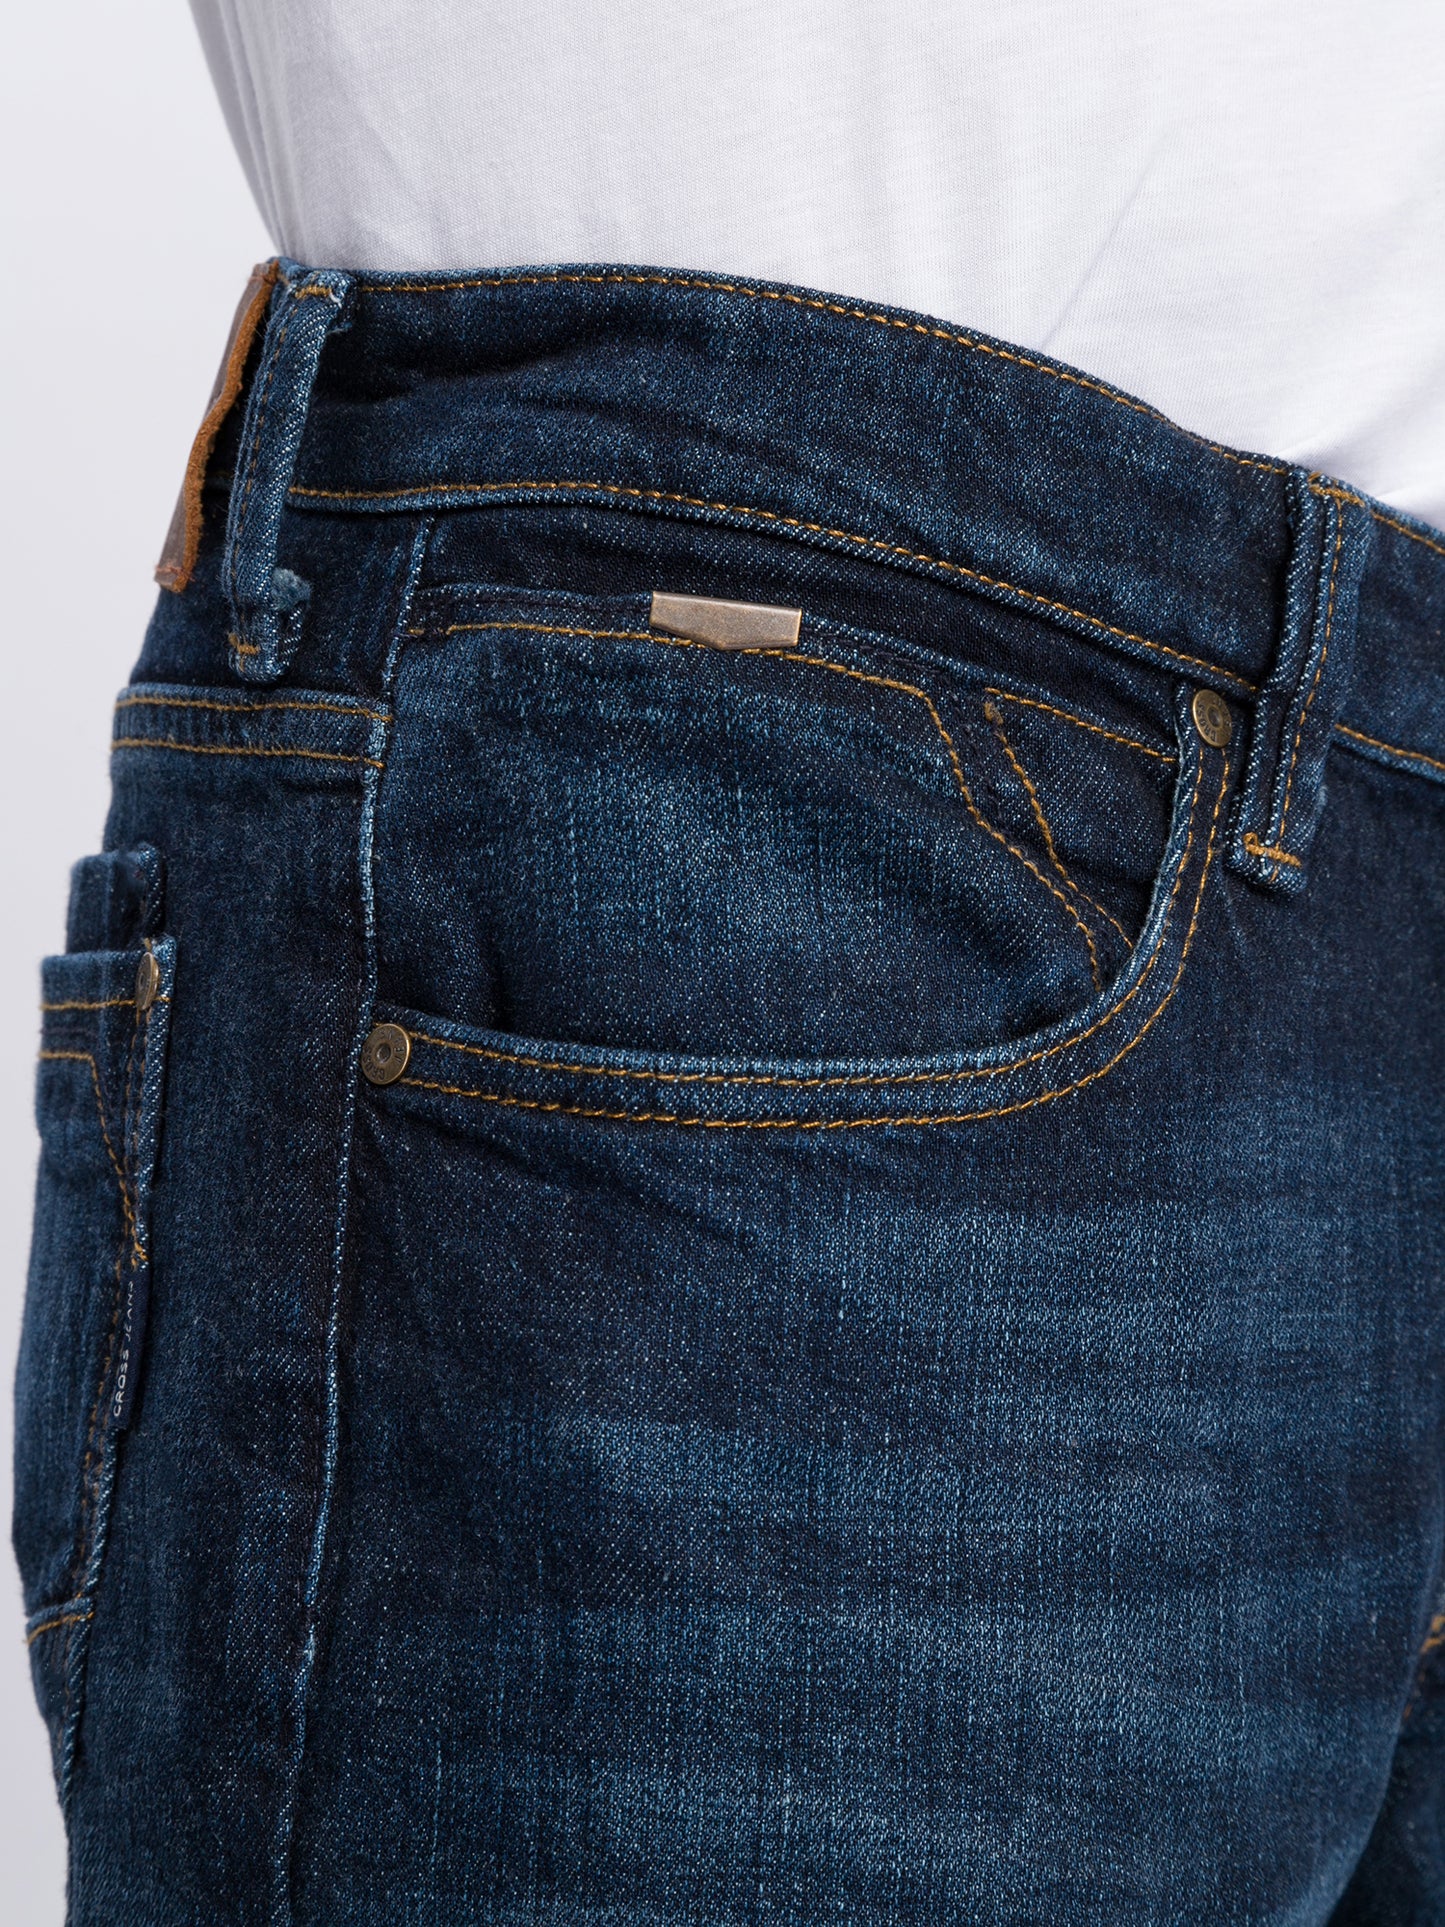 Dylan Herren Jeans Regular Fit Regular Waist Straight Leg dunkelblau